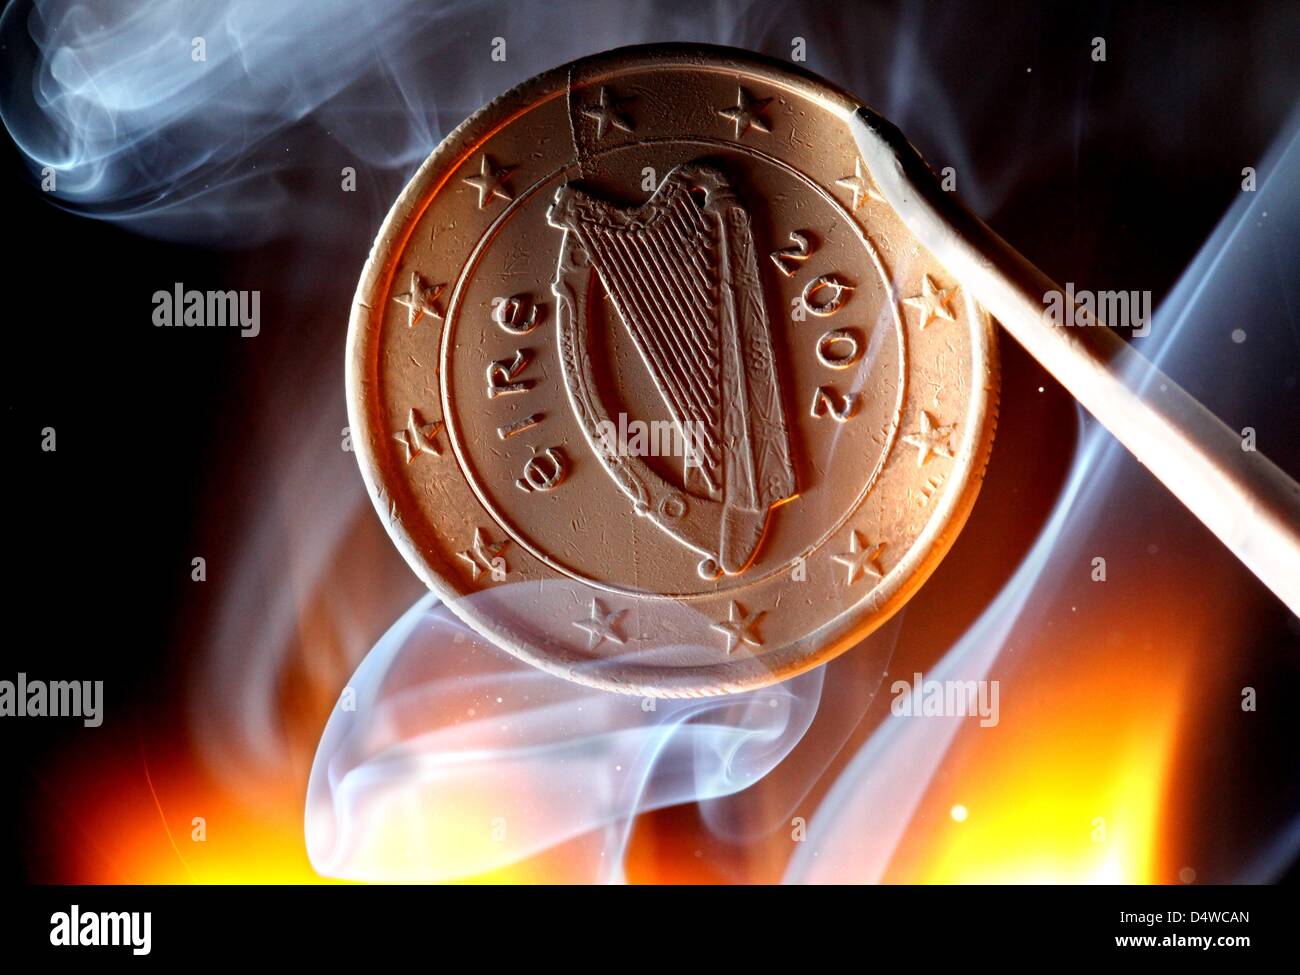 Un irlandés una moneda de euro destacados en Duesseldorf, Alemania, el 22 de noviembre de 2010. Irlanda es el primer país en solicitar oficialmente un rescate financiero de la Unión Europea (UE) y el Fondo Monetario Internacional (FMI). El Ministro de Hacienda, Lenihan confirmó que la cantidad de dinero que se pide en el rescate equivalía a "decenas de miles de millones de euros, pero negó que sería como Foto de stock